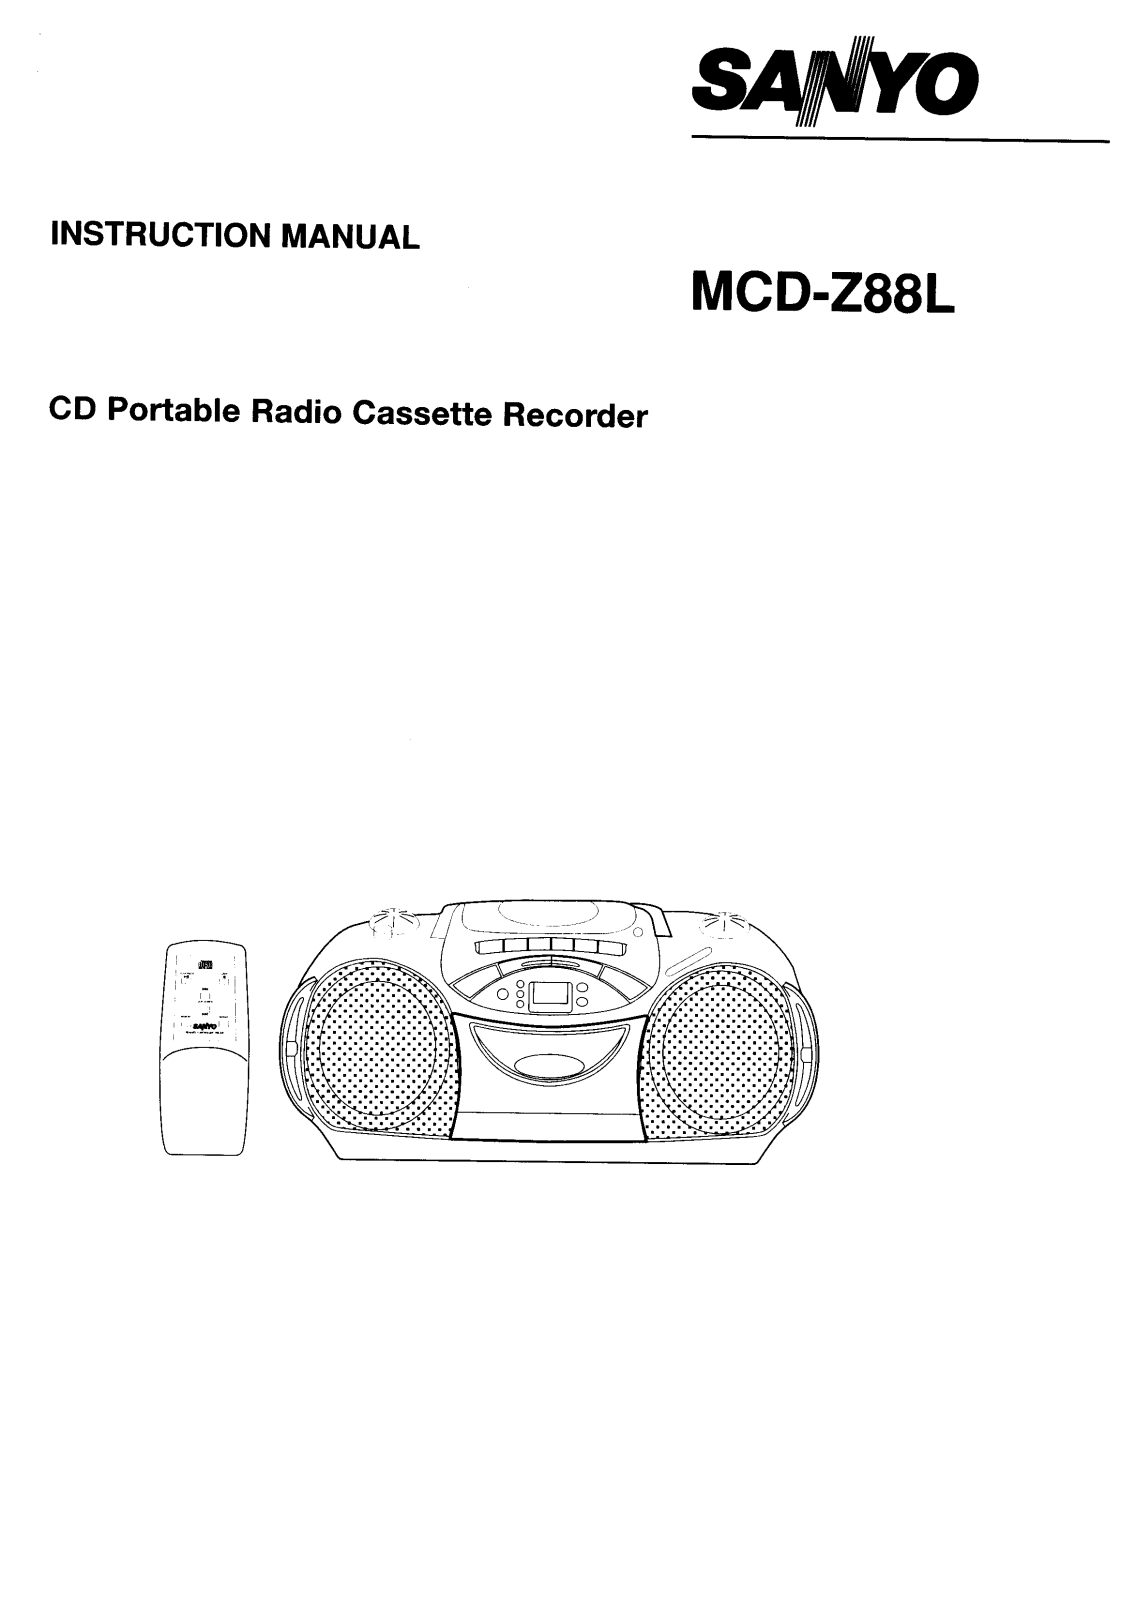 Sanyo MCD-Z88L Instruction Manual